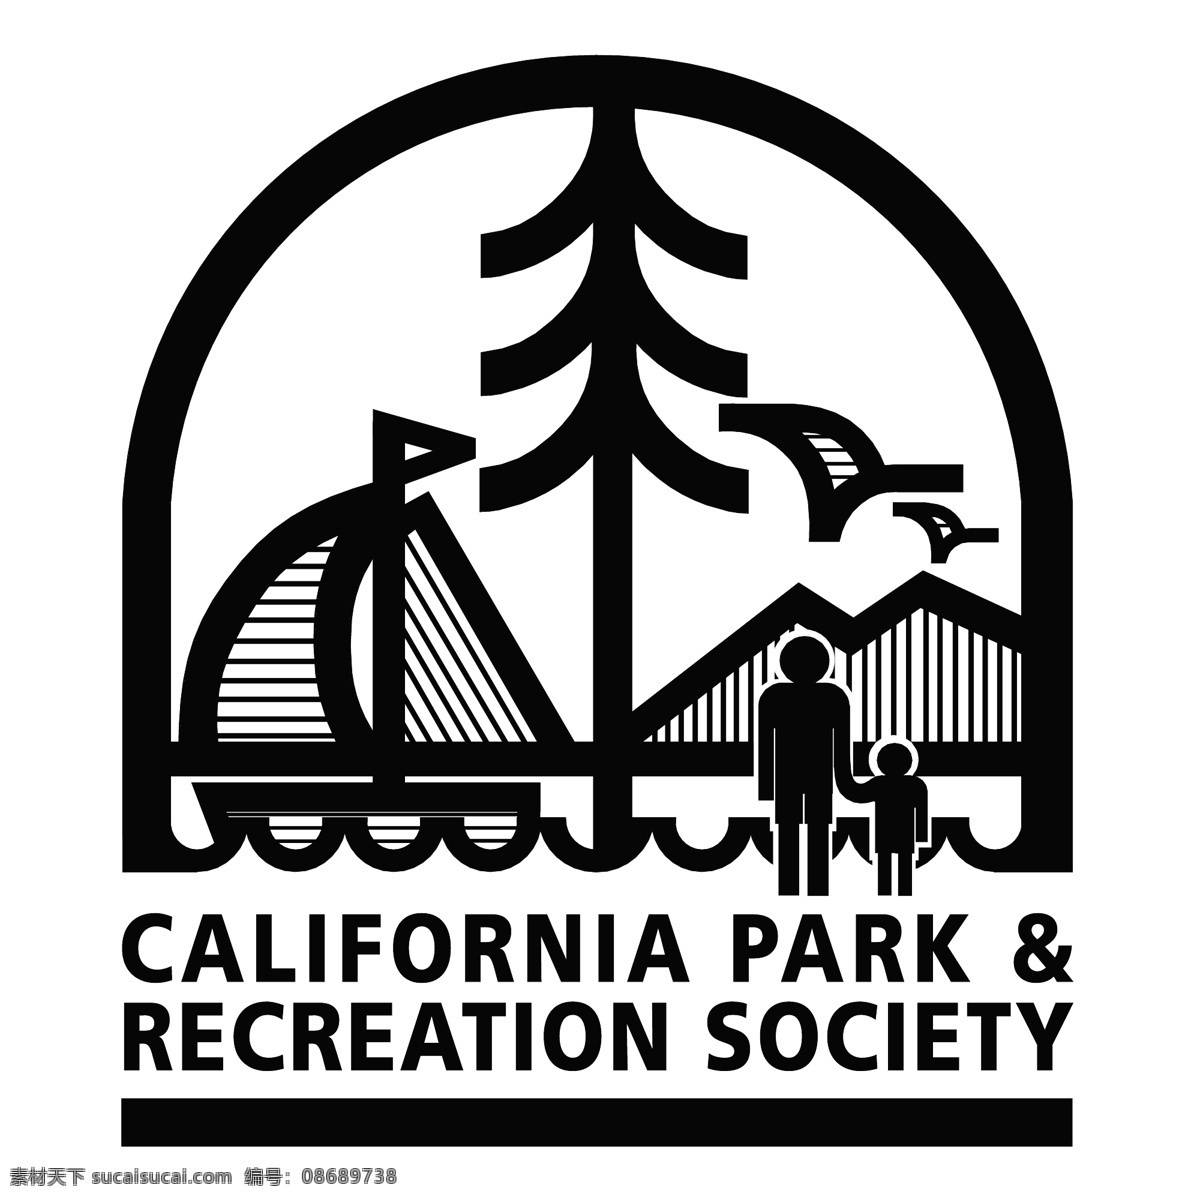 加利福尼亚 公园 娱乐 社会 免费 矢量图下载 休闲 娱乐的社会 矢量公园游乐 载体 休闲公园 公园和娱乐 矢量 建筑家居